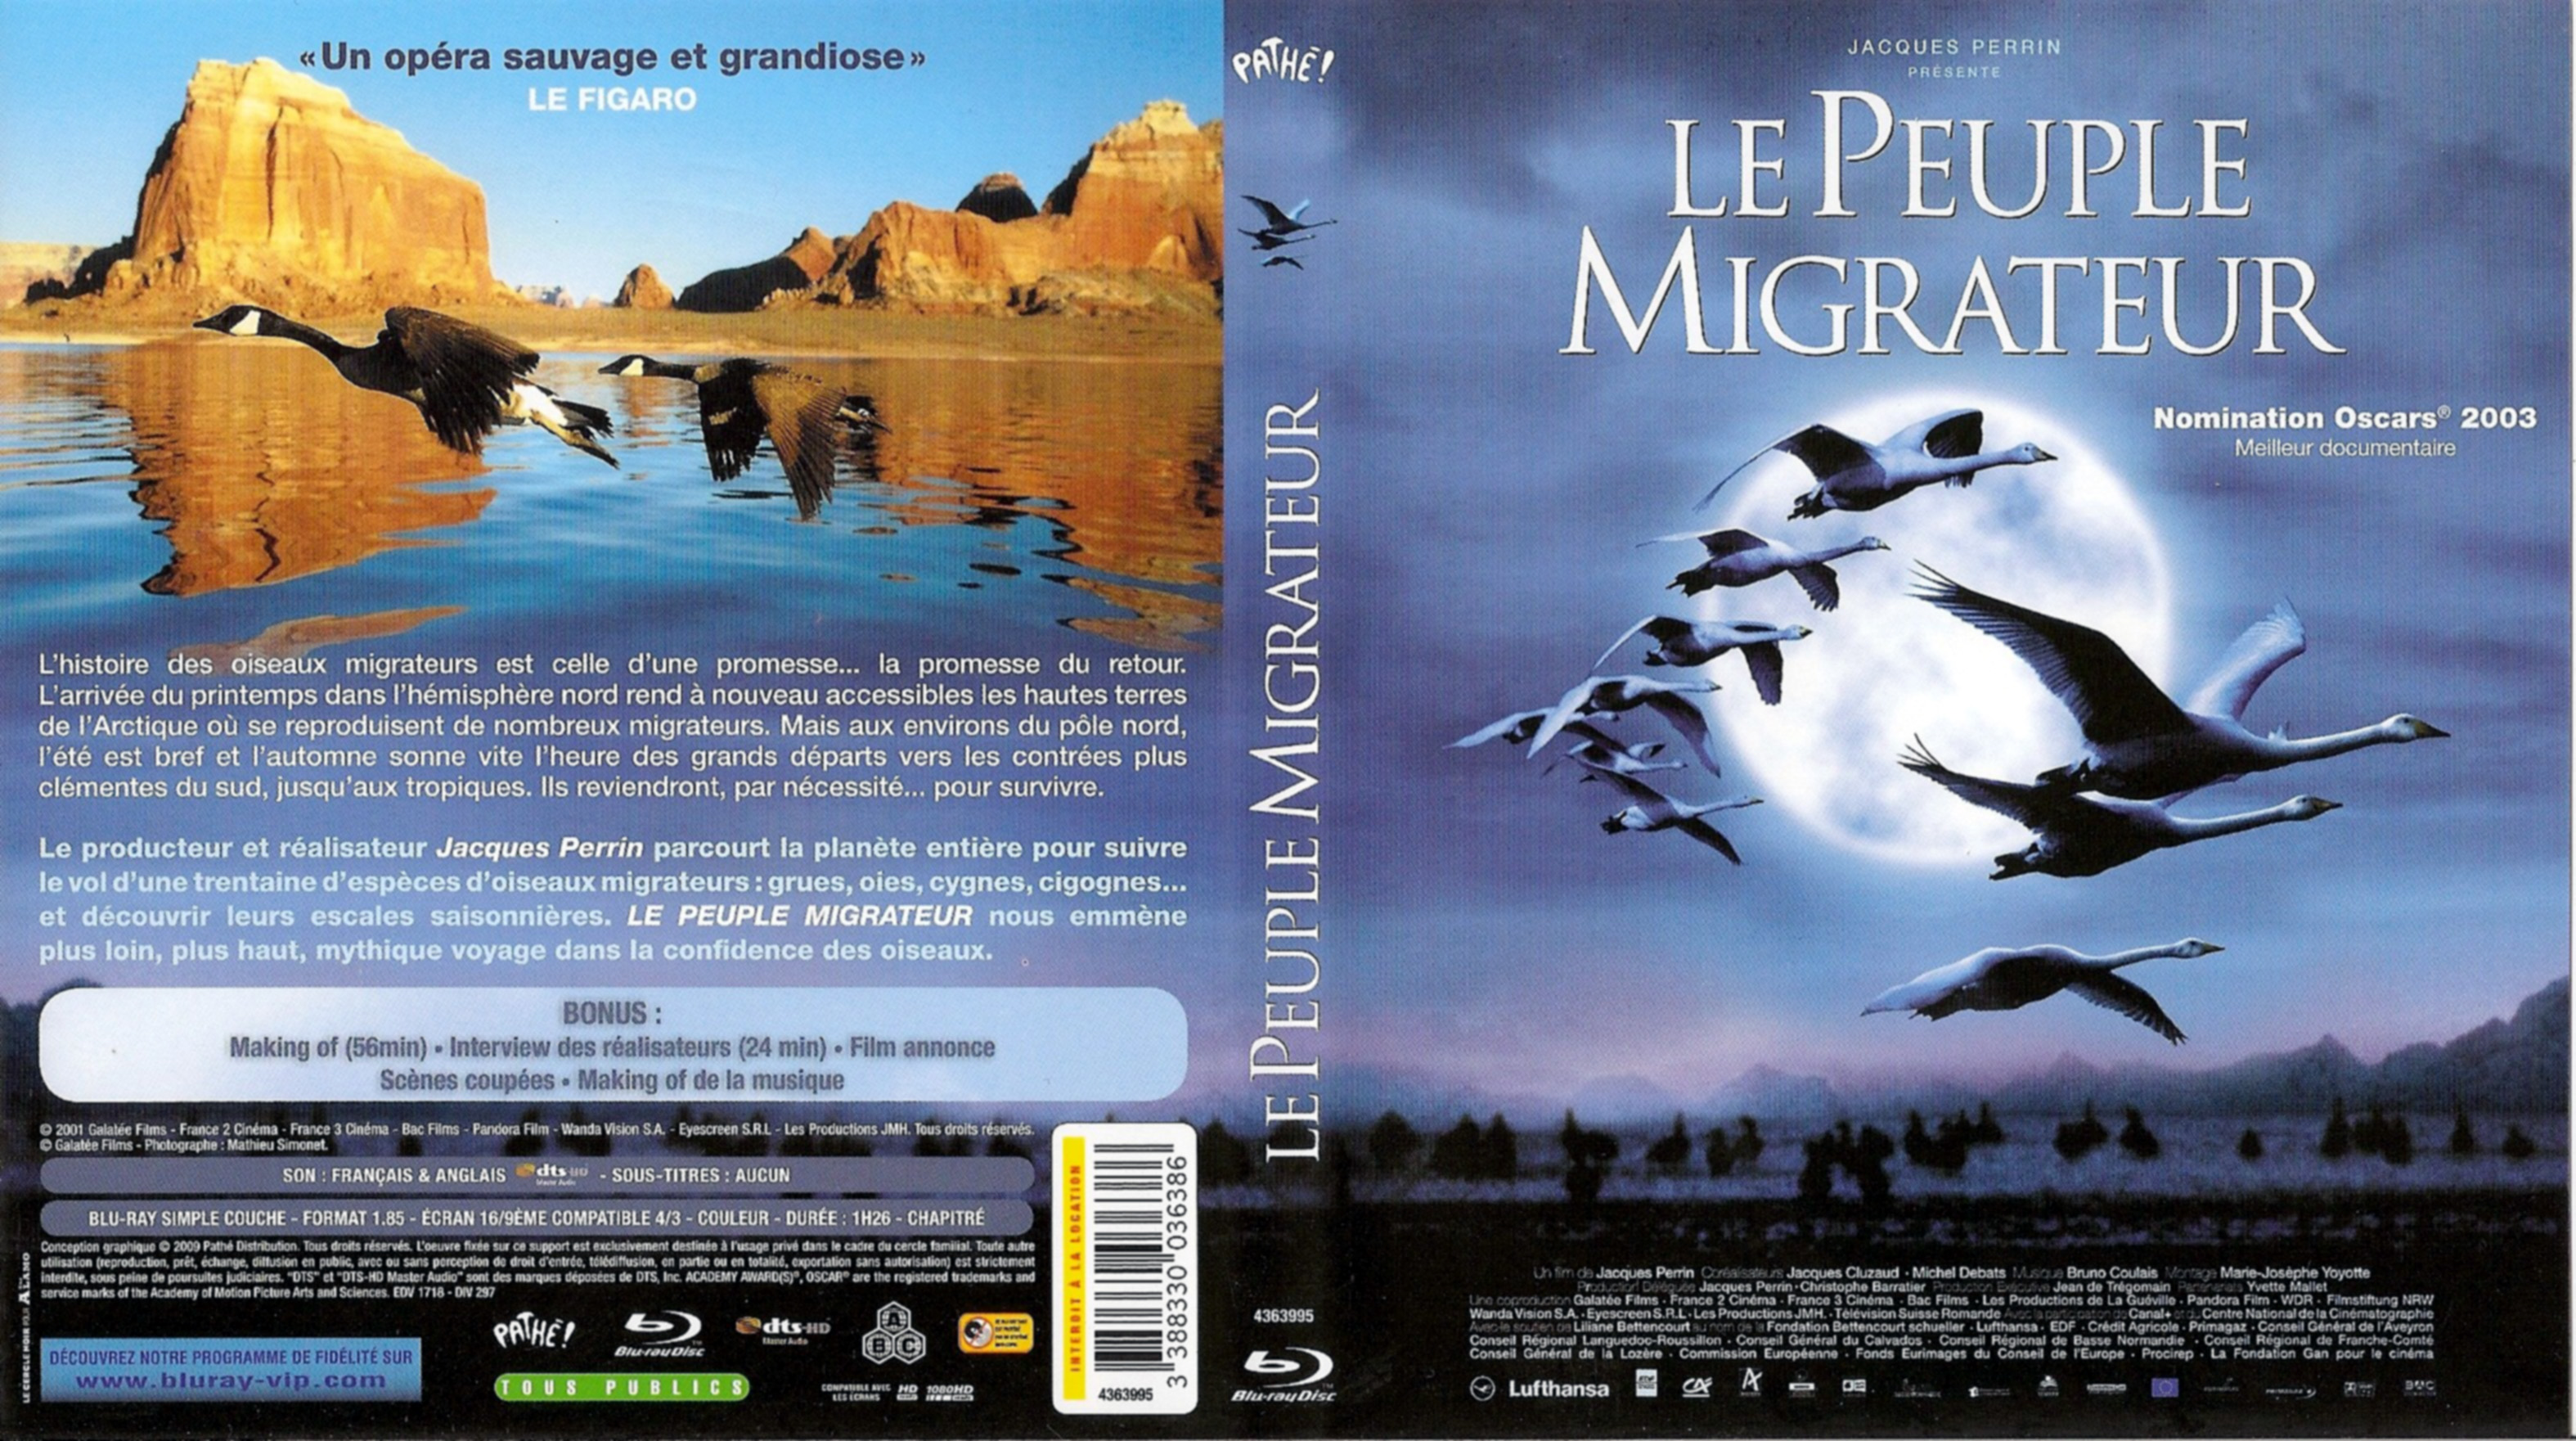 Jaquette DVD Le peuple migrateur (BLU-RAY)